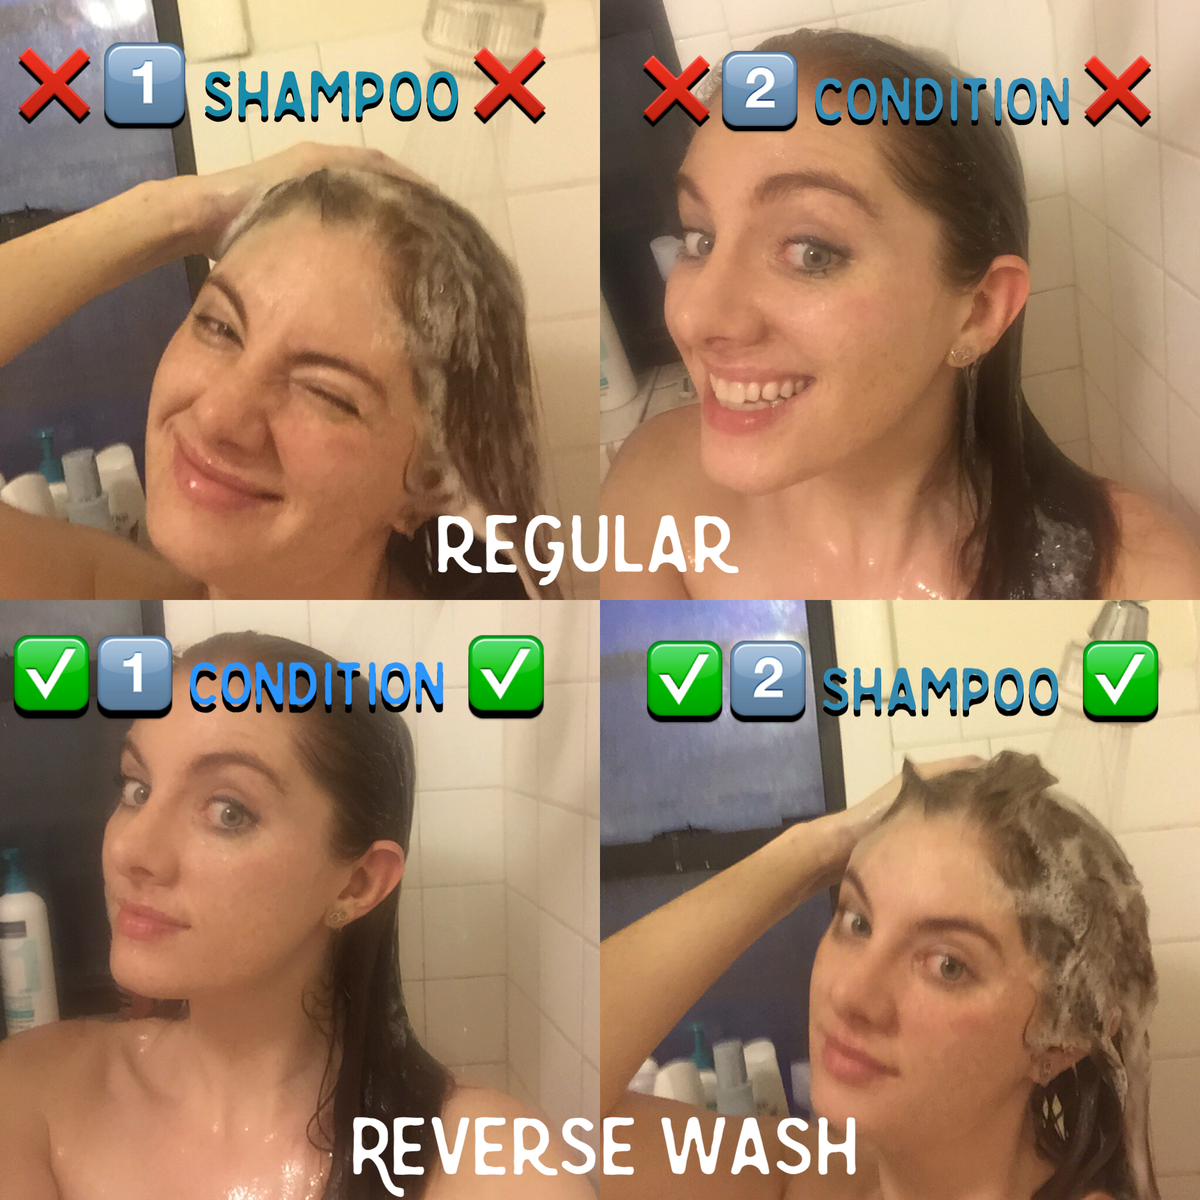 Fungerer virkelig vaskemetoden for omvendt hår?